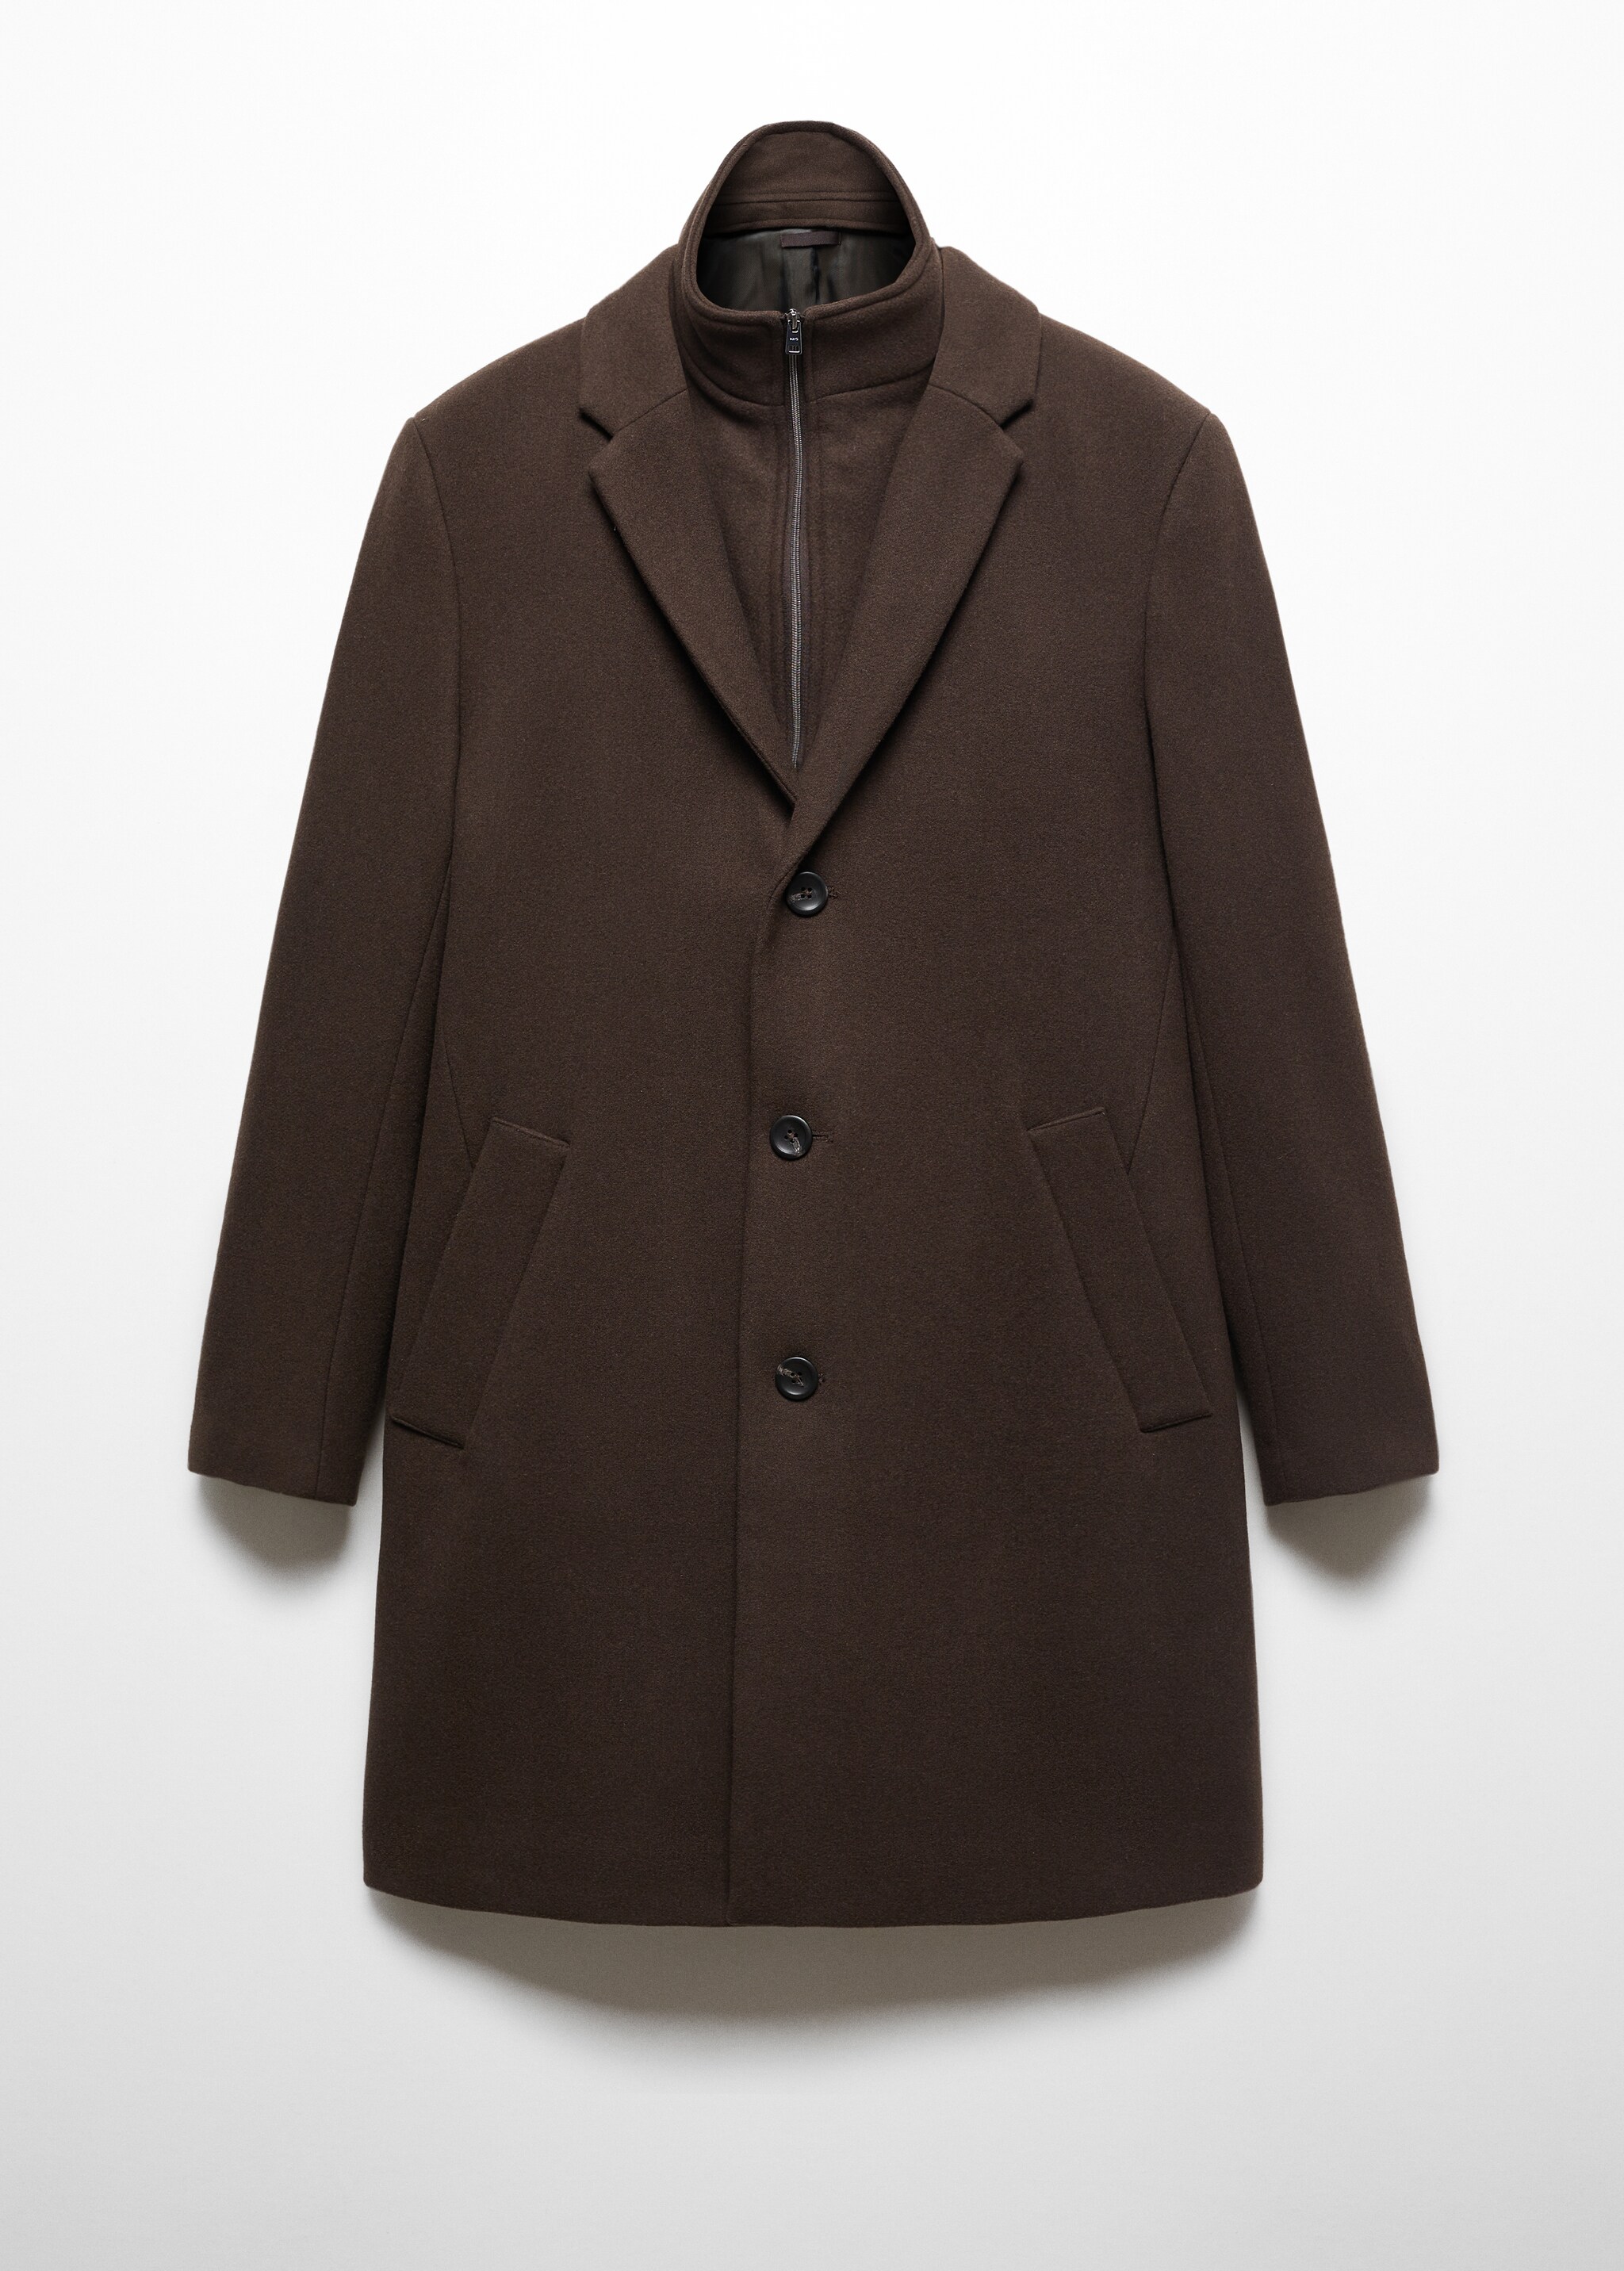 Пальто из шерсти со съемным воротником - Изделие без модели